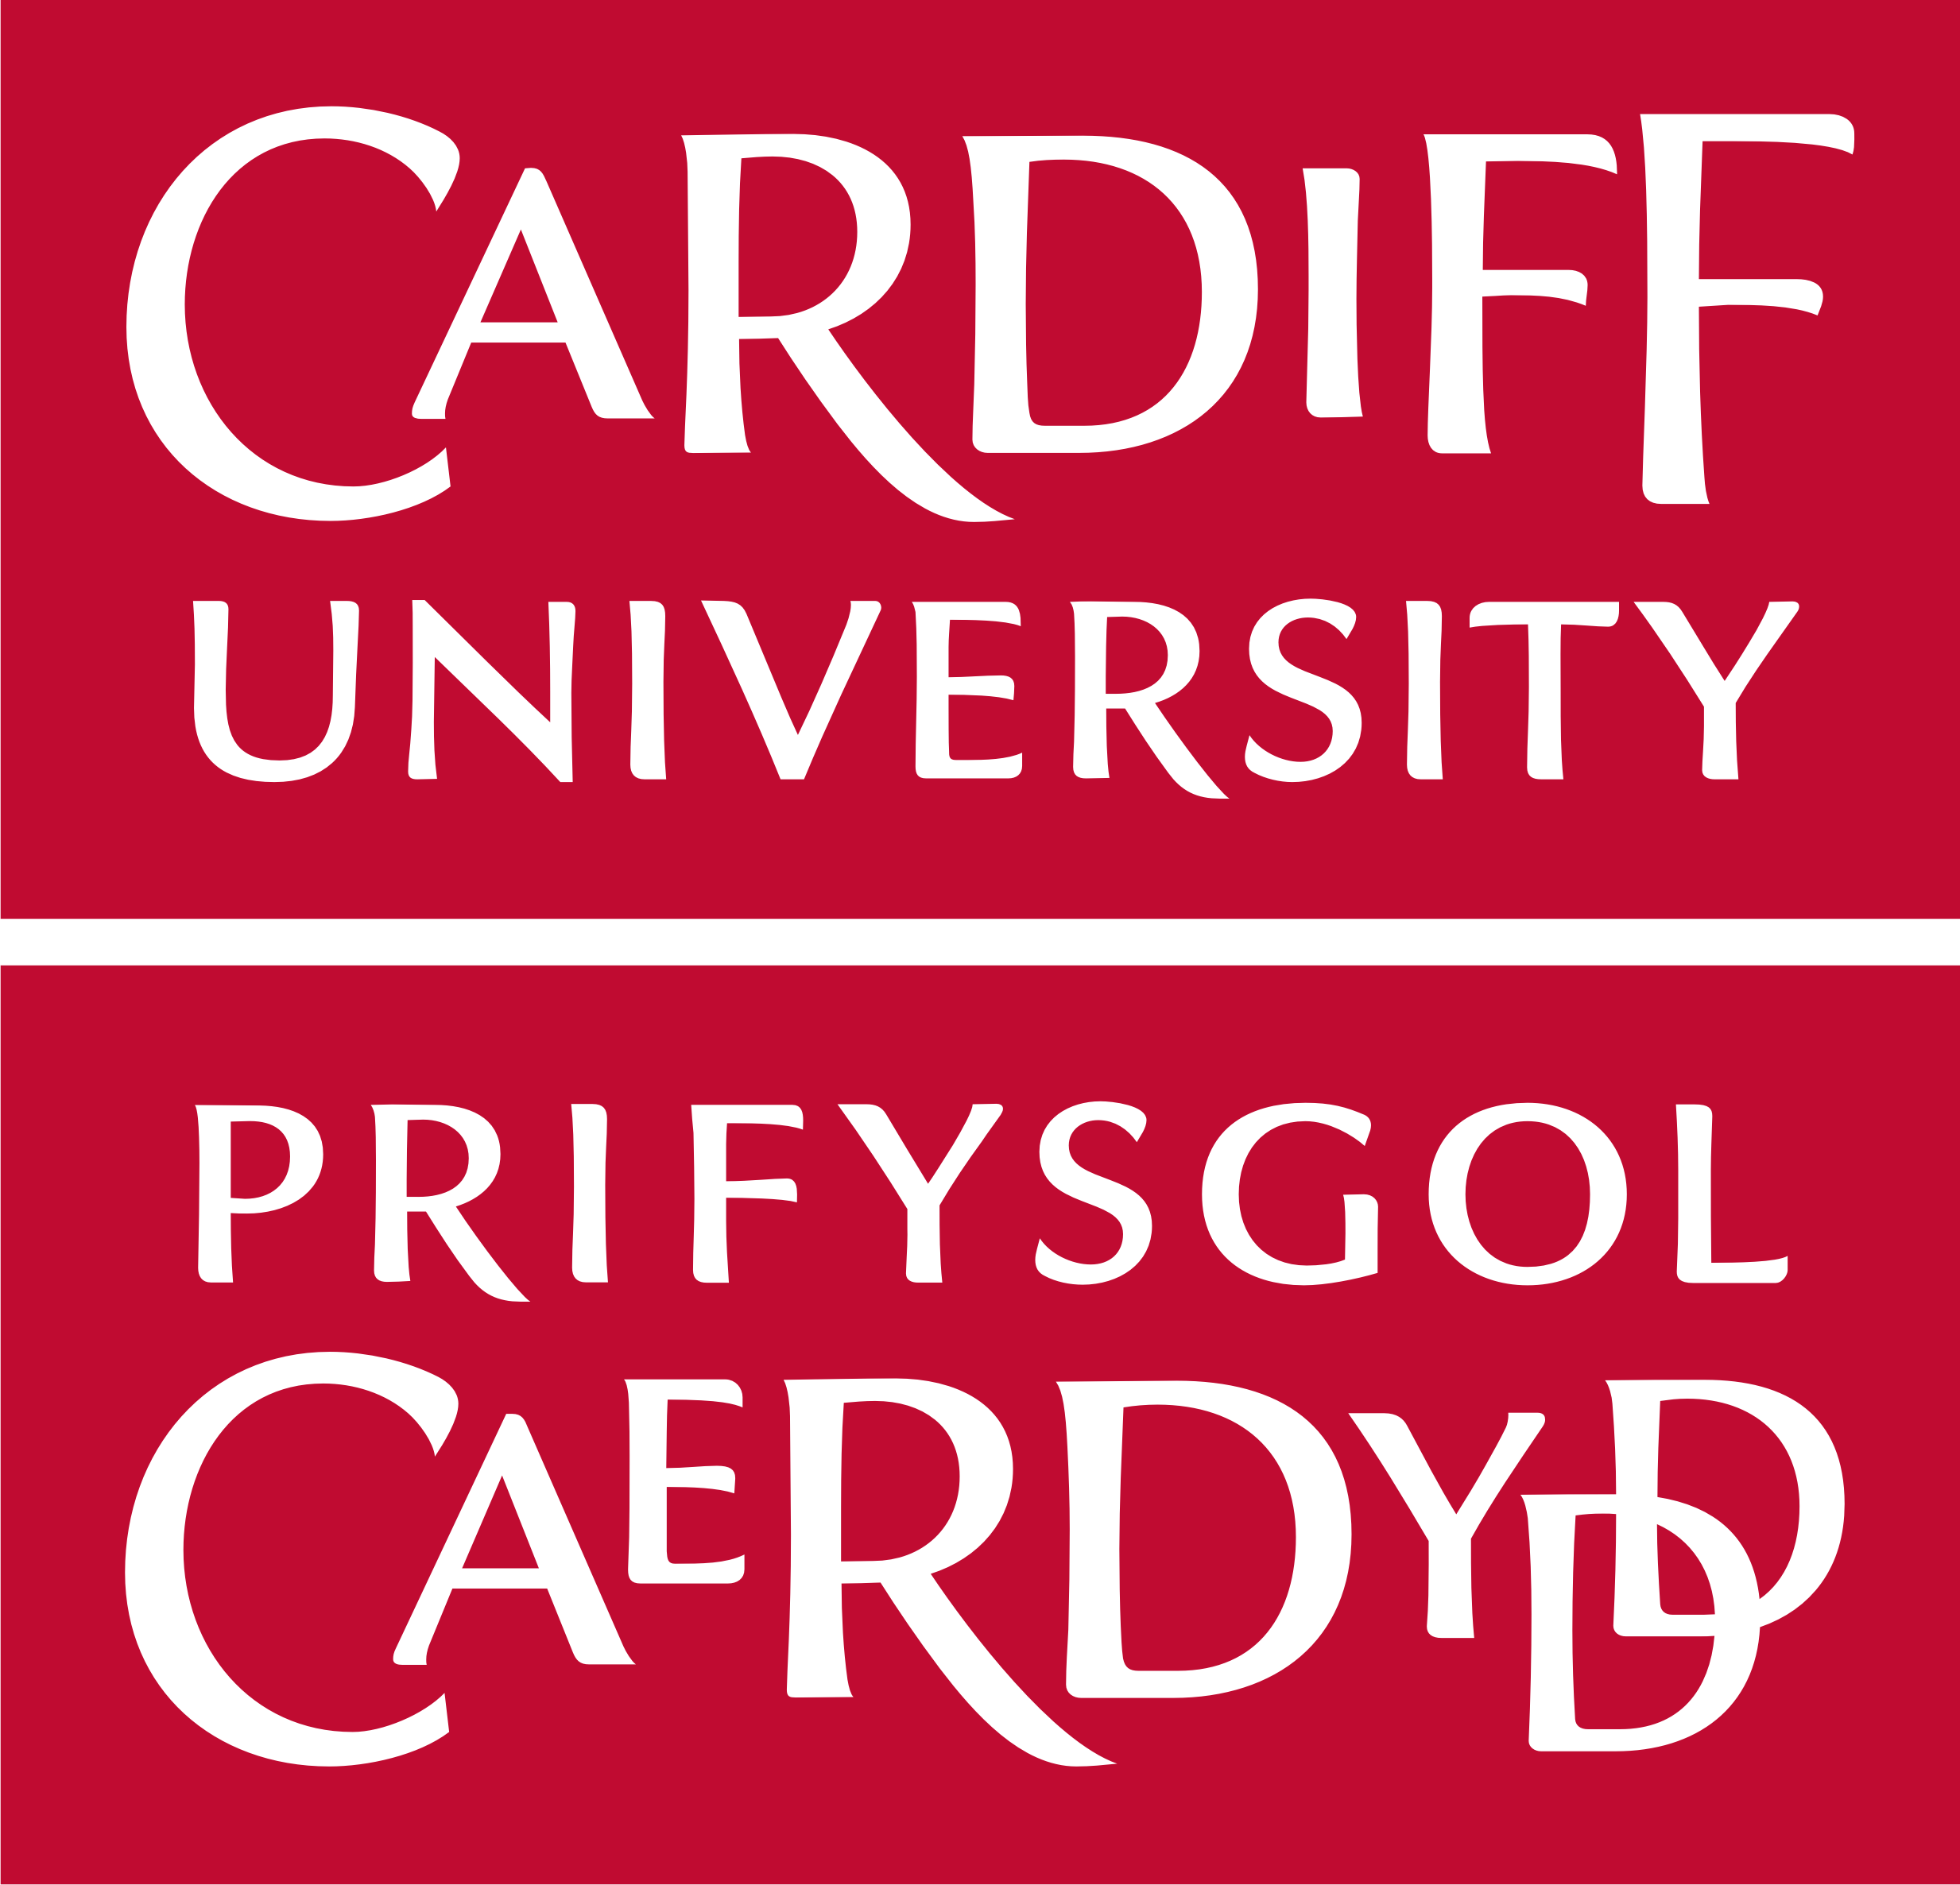 university of Cardiff logo